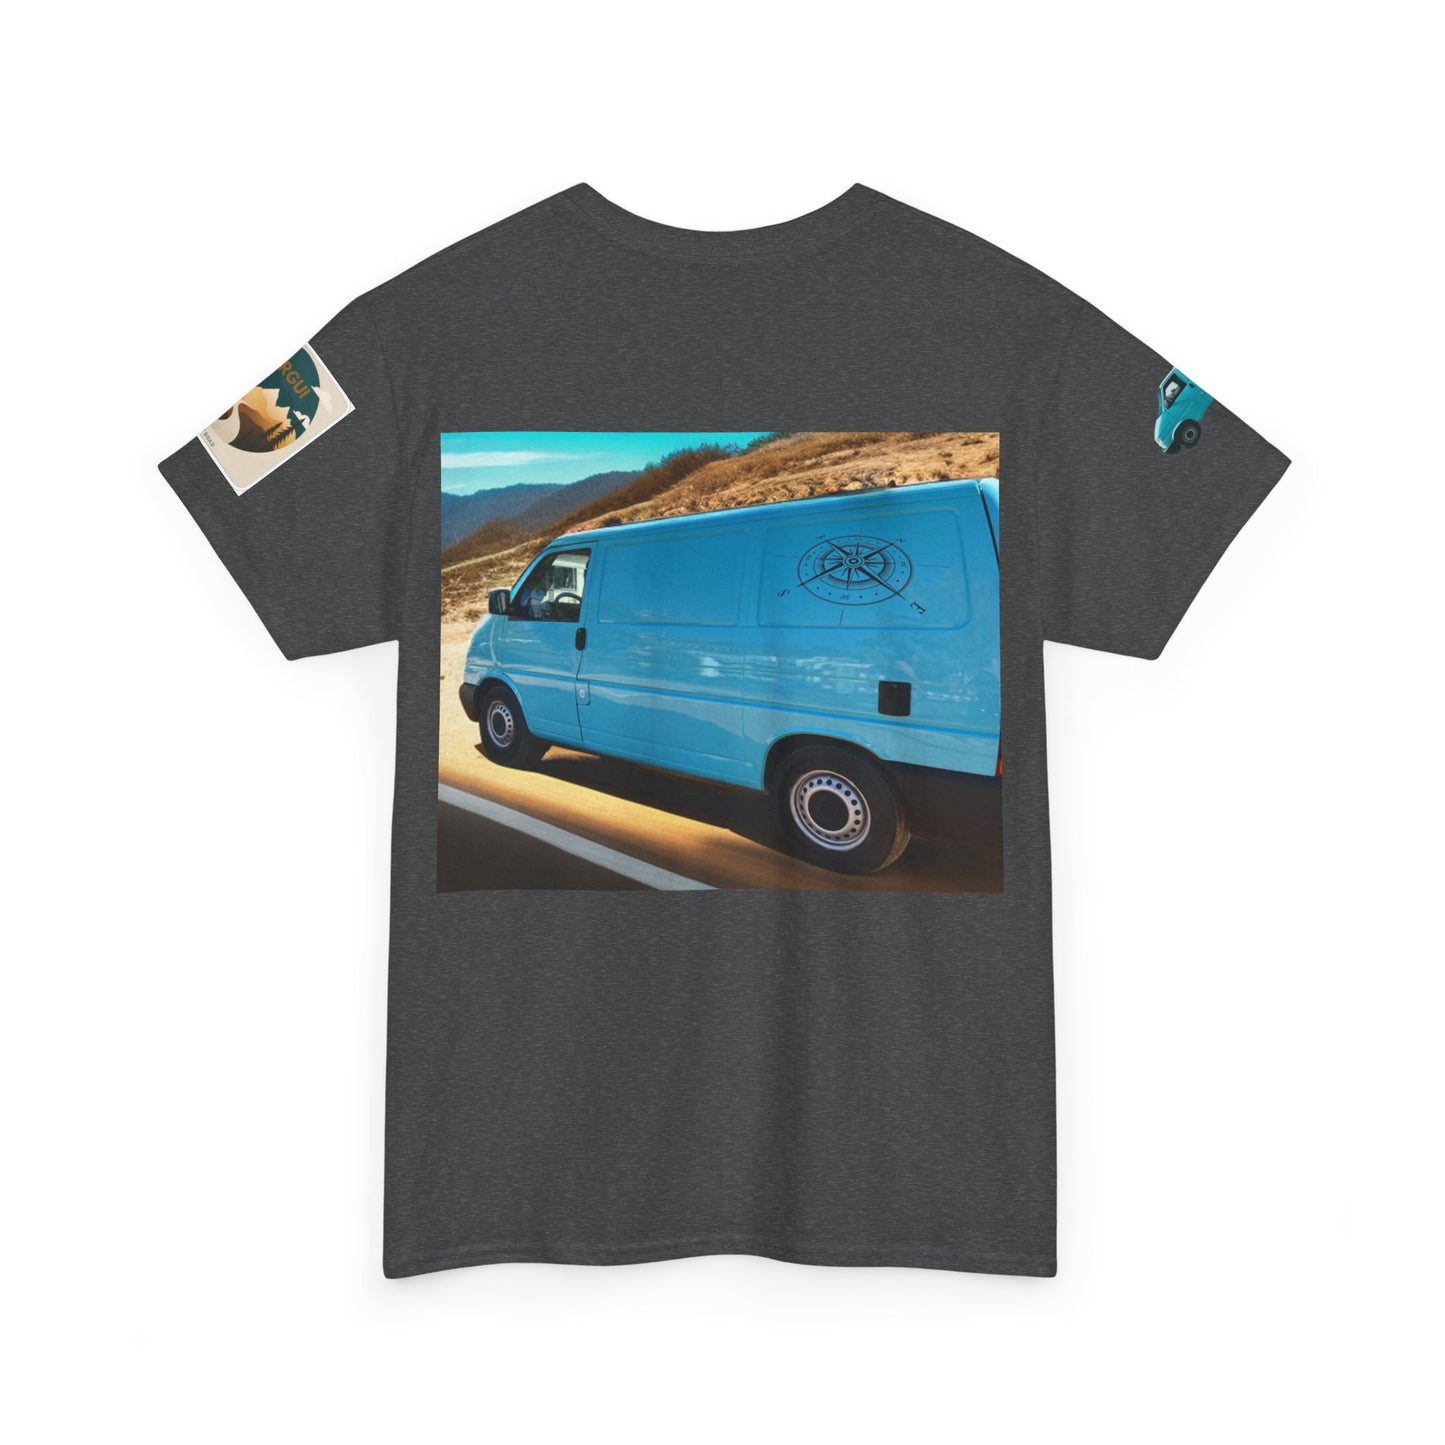 Camiseta personalizada de furgoneta, Camiseta de casa rodante personalizada, camisa caravana personalizada, Camisa camioneta personalizada.